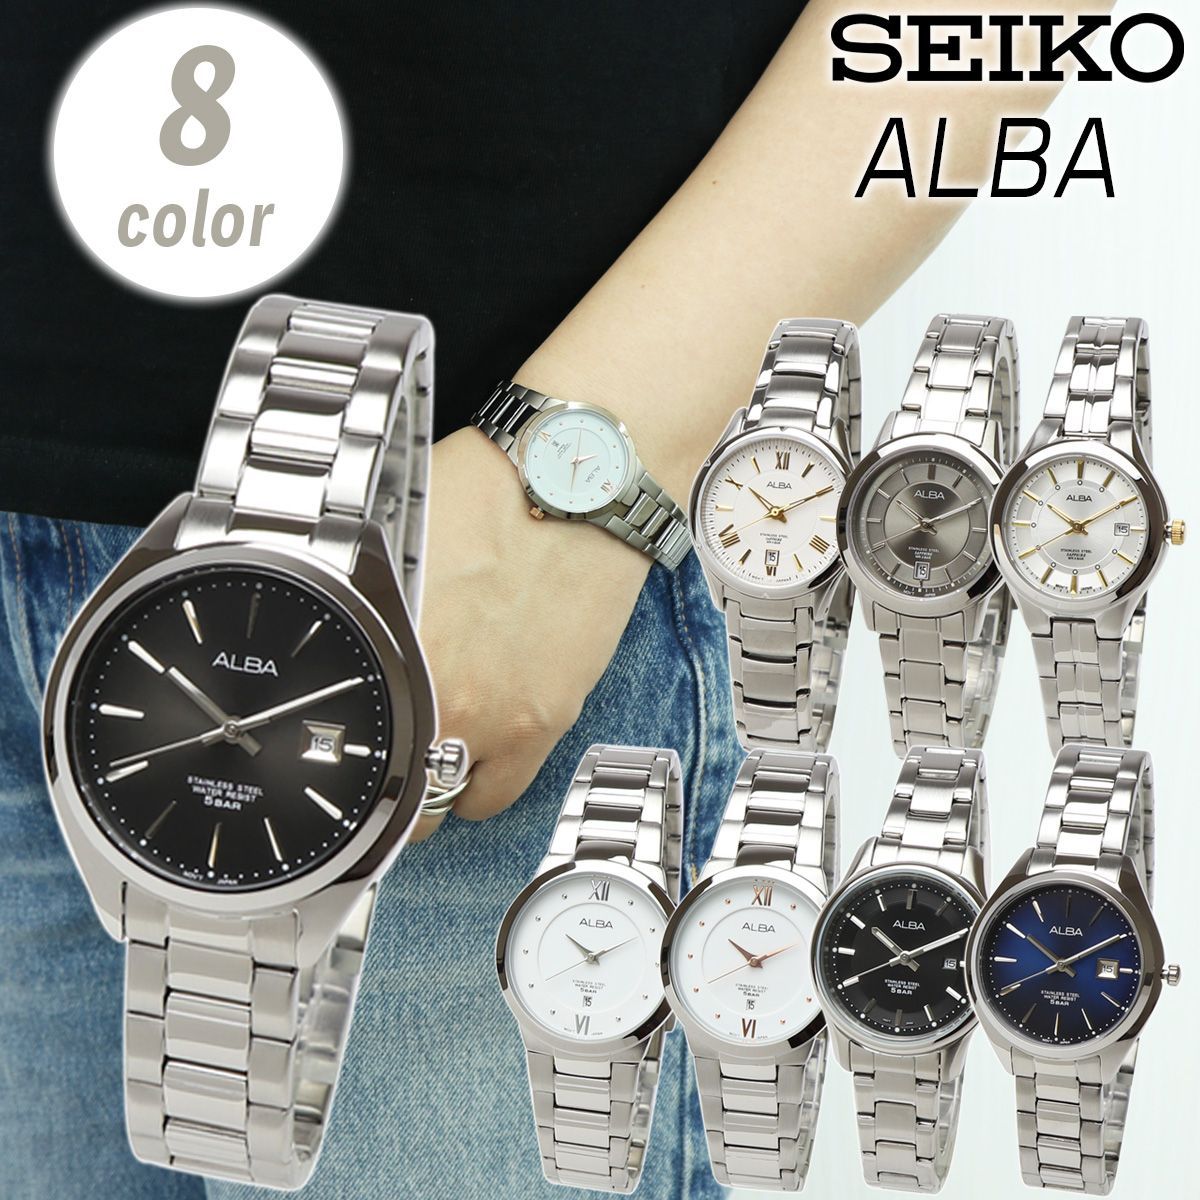 SEIKO セイコー ALBA アルバ クォーツ レディース ステンレス ビジネス アナログ 日付 カレンダー 時計 腕時計 女性 シンプル ブレスレット